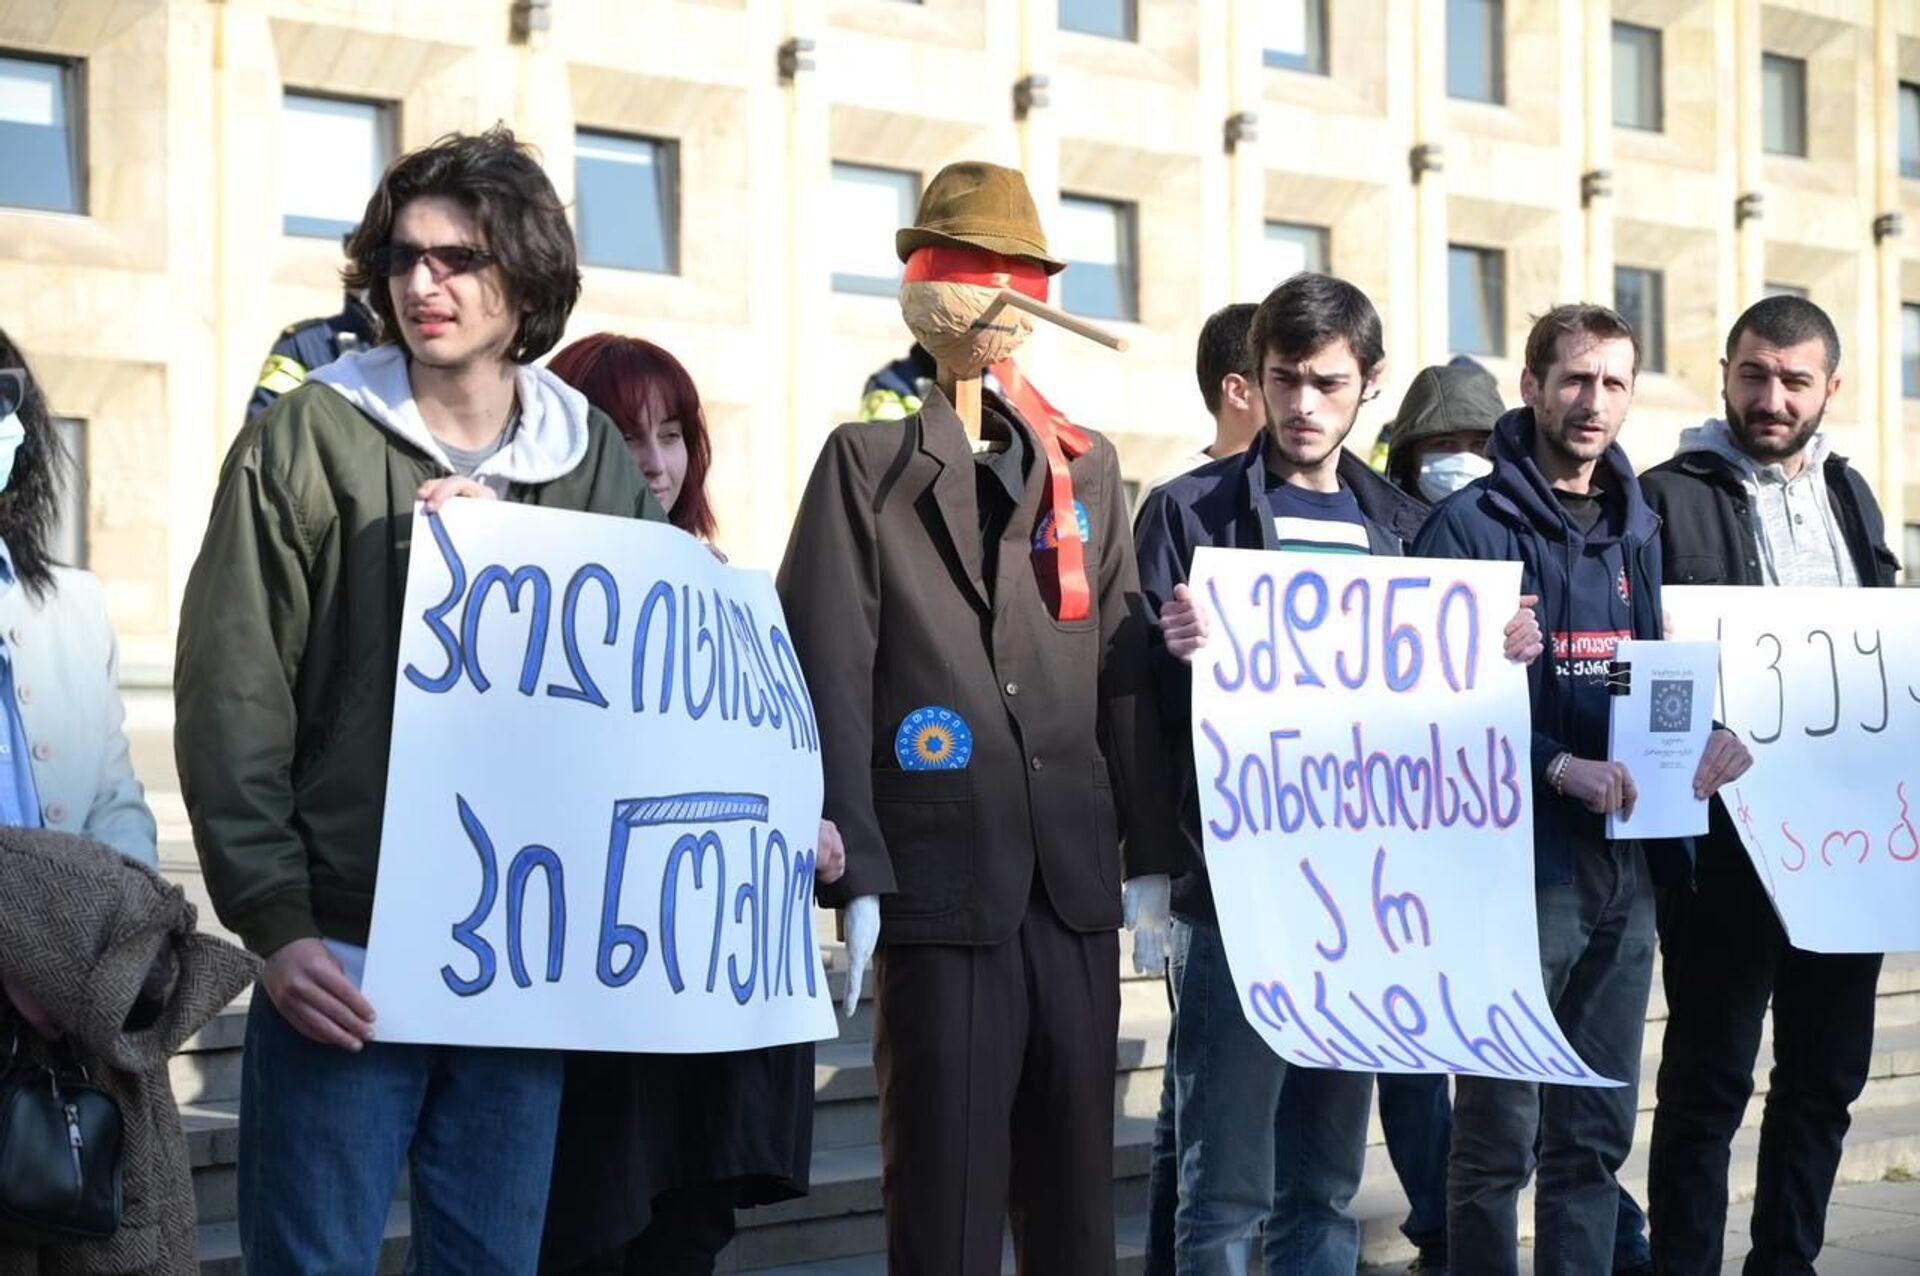 Вранье! – протестующие принесли Пиноккио к зданию правительства Грузии  - Sputnik Грузия, 1920, 11.02.2021